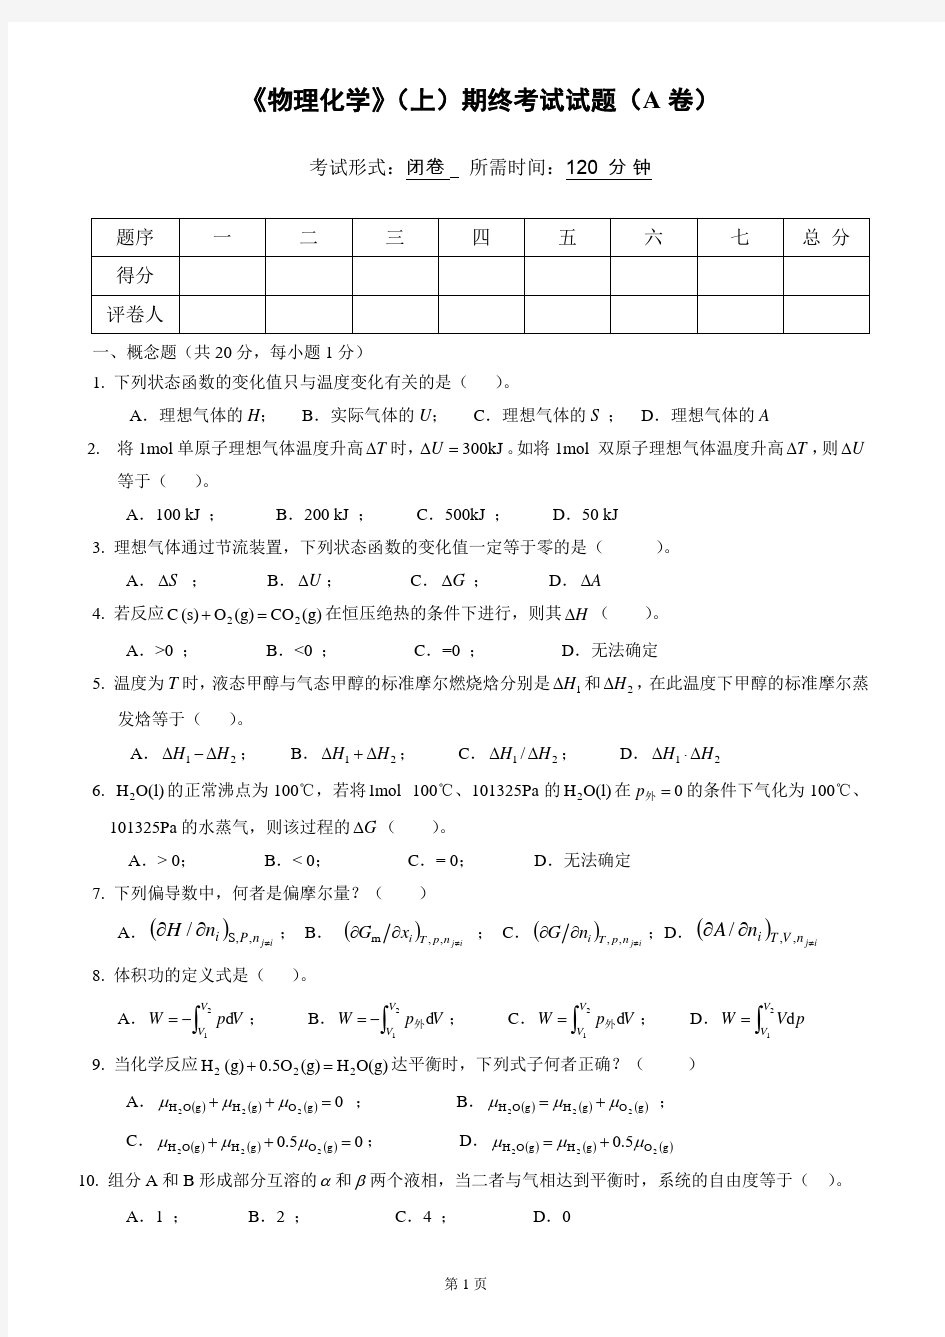 物理化学__华东理工大学(9)--《物理化学》(上)考试试卷及答案(A)